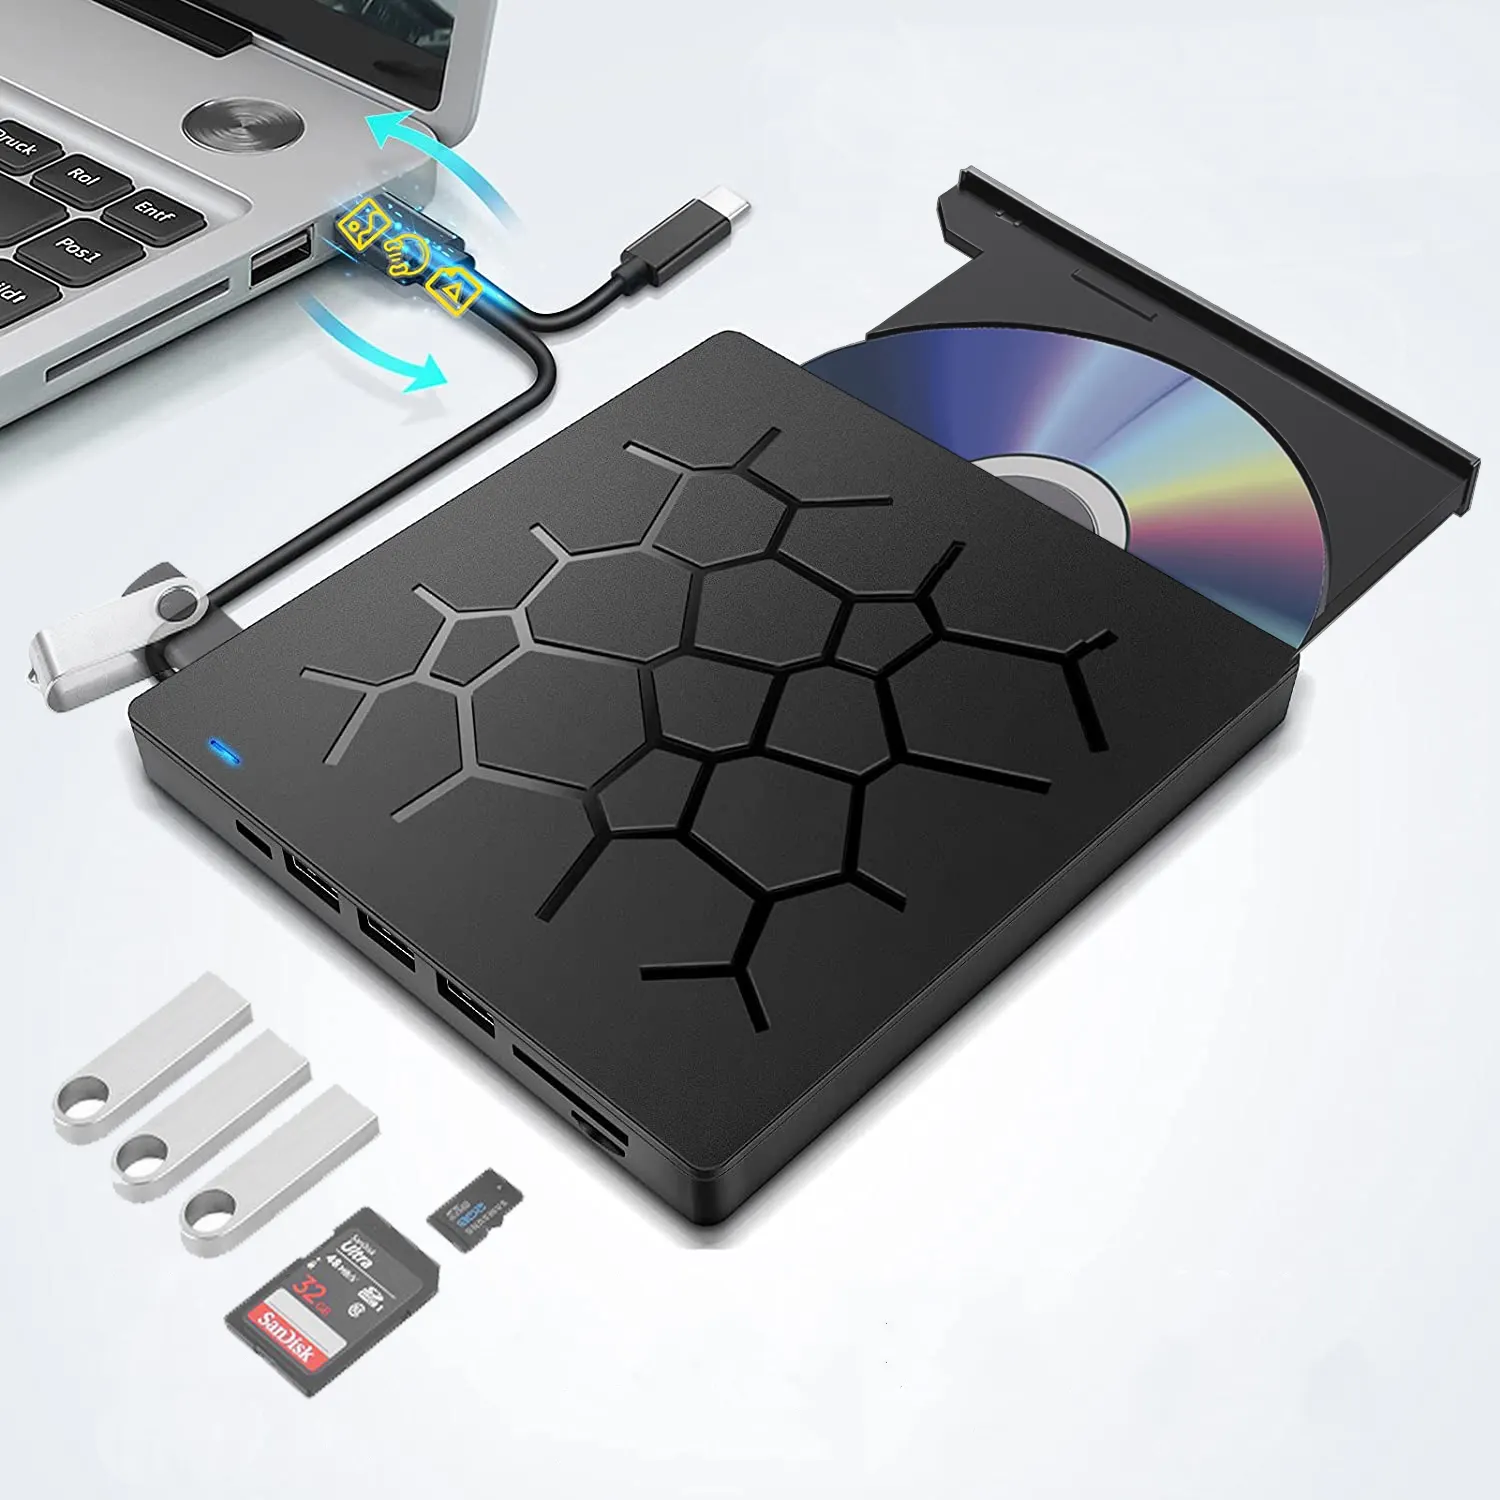 CD/DVD Drive eksternal untuk Laptop, penulis DVD Drive eksternal ramping portabel 7 in 1 USB 3.0, pembakar CD ROM secara optik